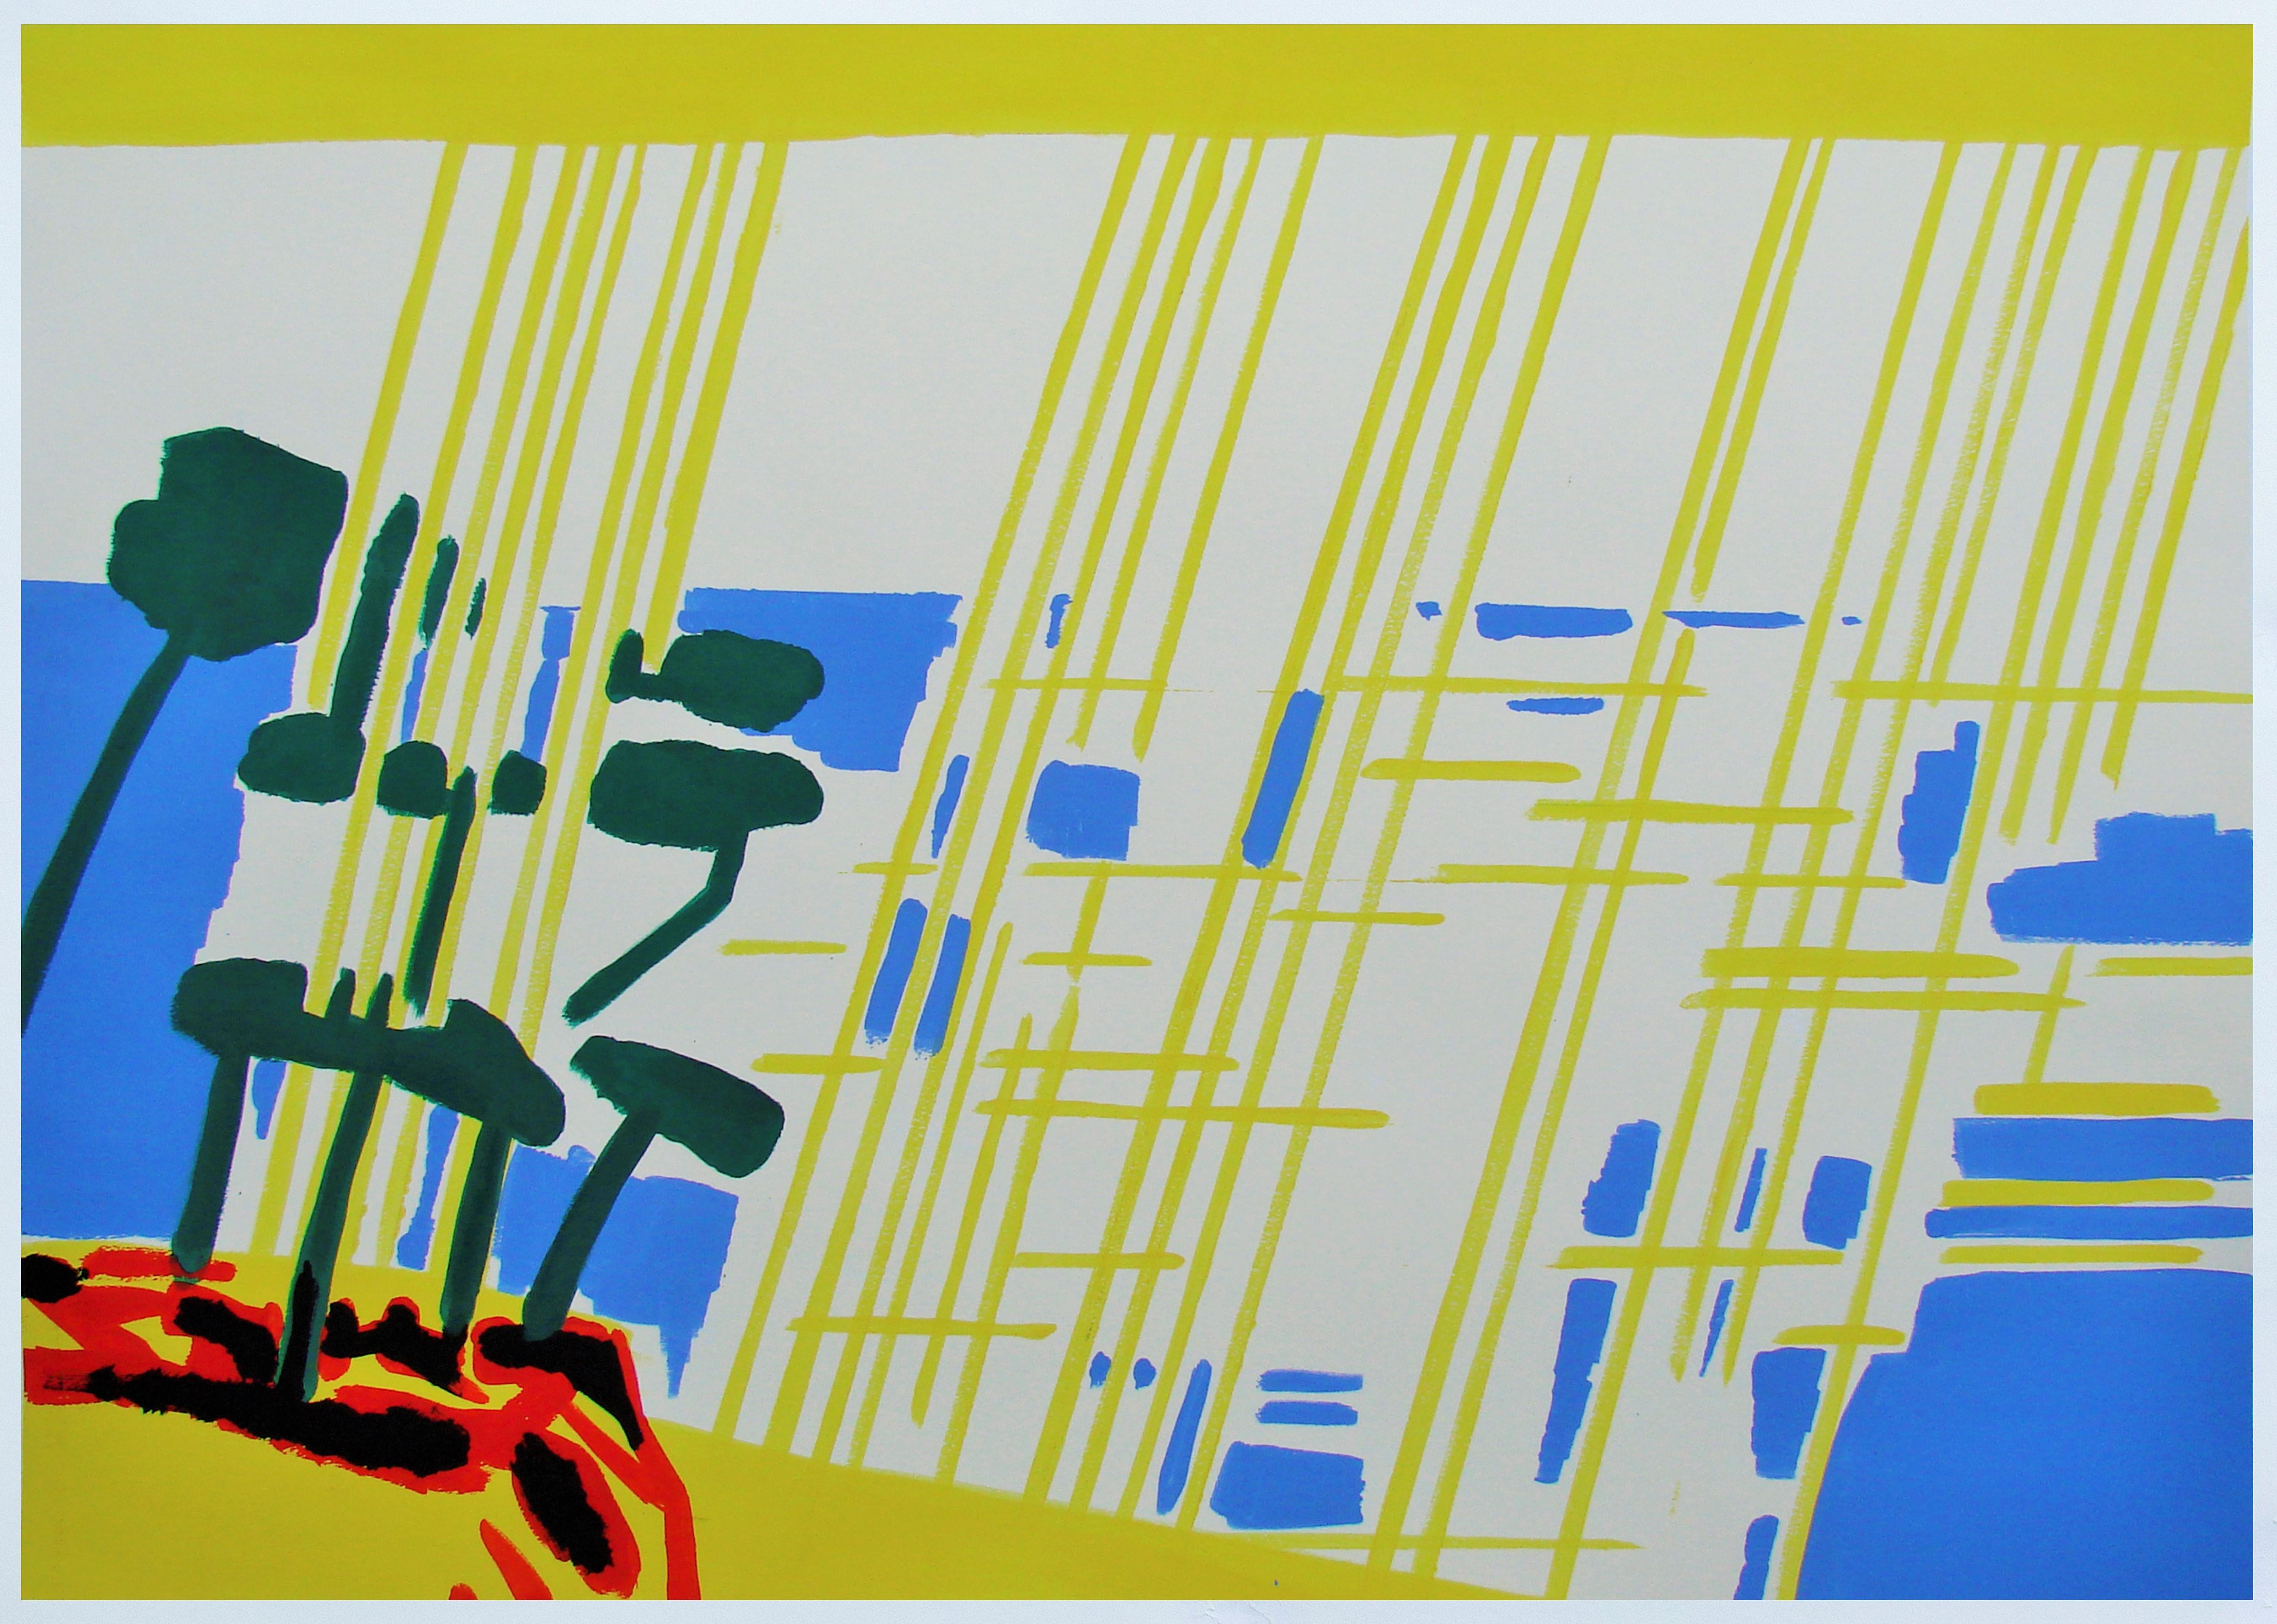 Meridional VIII - Zeitgenössisch, Zeichnung, Gelb, Blau, Rot, Landschaft, Sonne